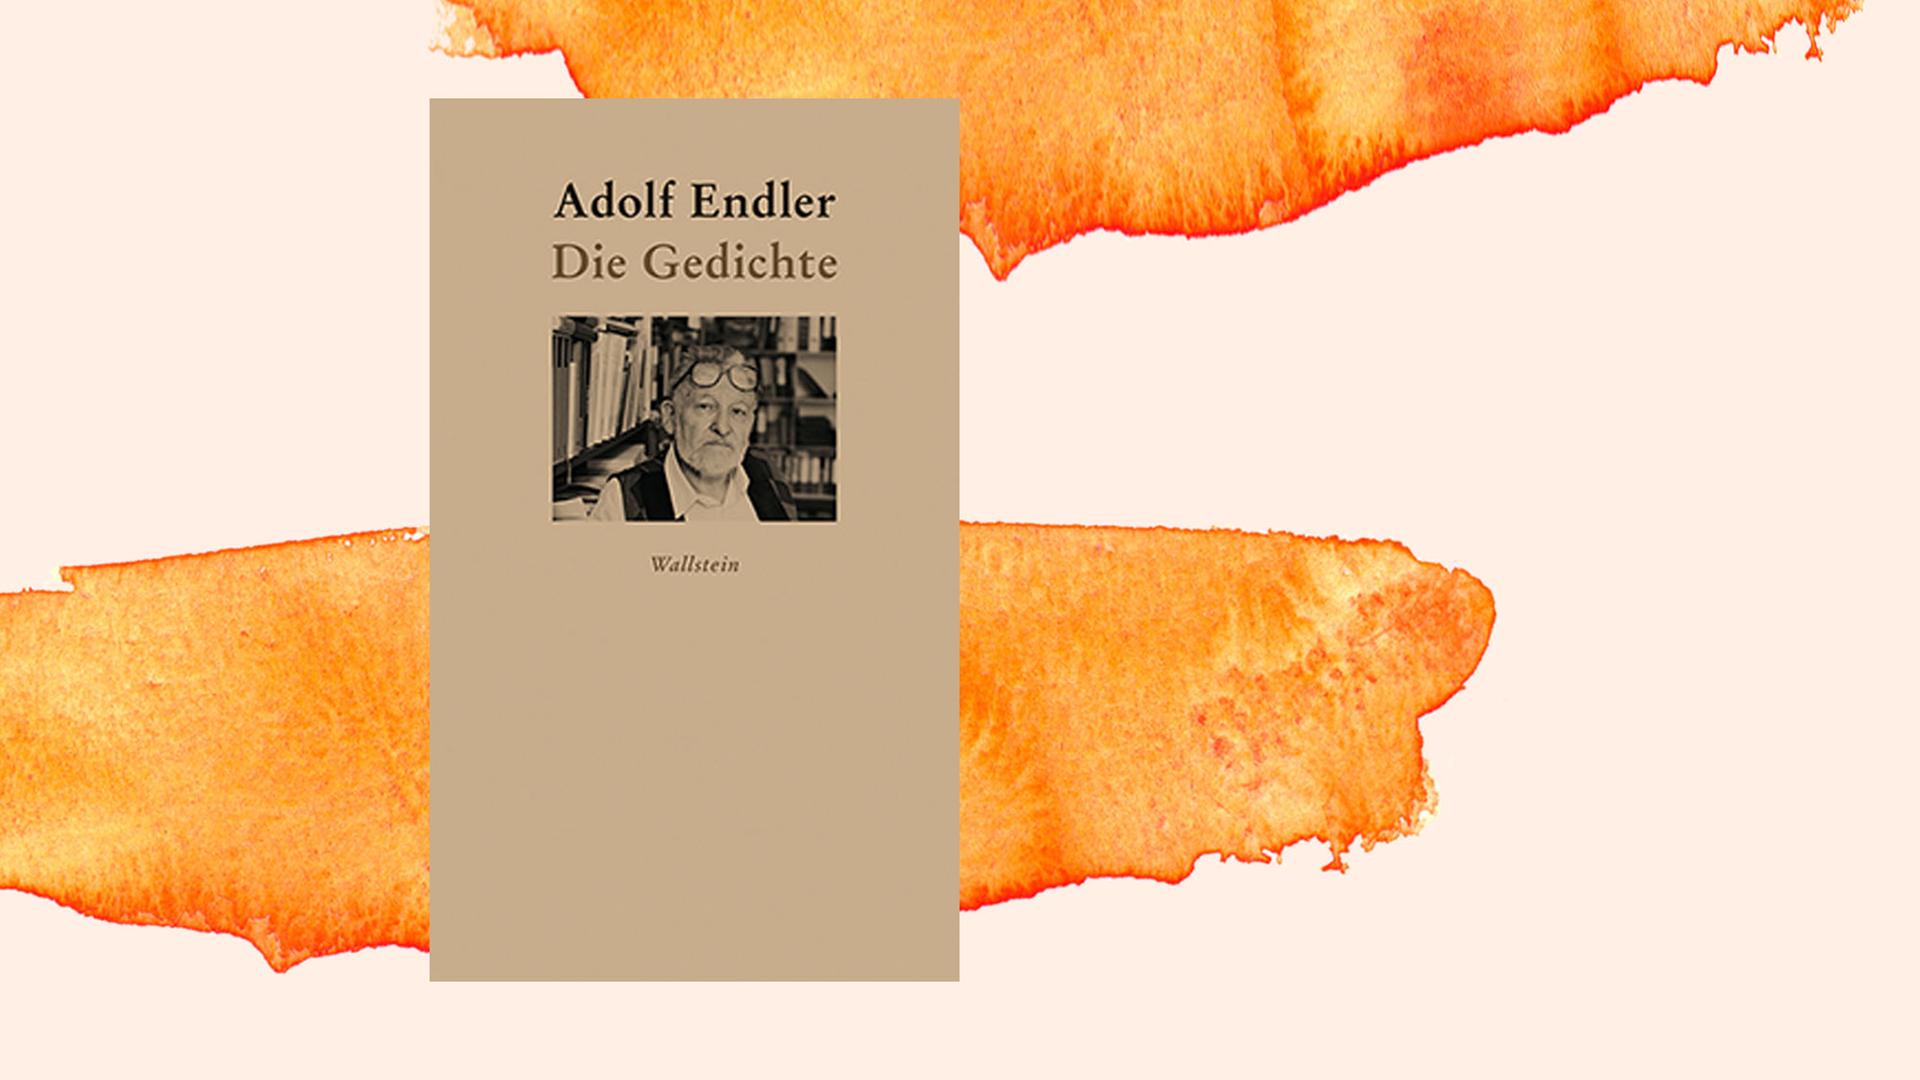 Auf orange-weißem Hintergrund ist das Cover zu sehen. Auf einem kleinen Foto ist Adolf Endler auf einem schwarz-weiß Foo zu sehen, die Brille auf die Stirn geschoben. Darüber steht "Adolf Endler" und in der nächsten Zeilen "Die Gedichte"